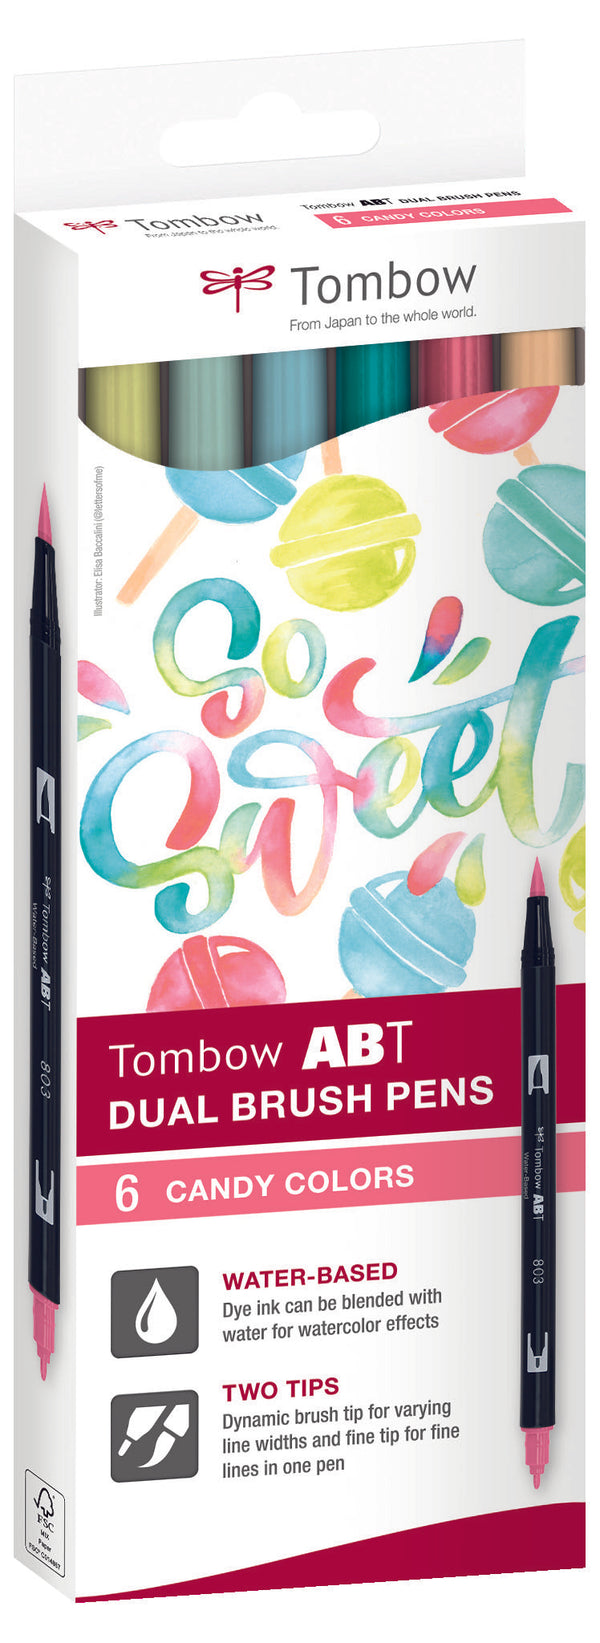 Feutre dual brush pen ABT étui 6 "Candy"